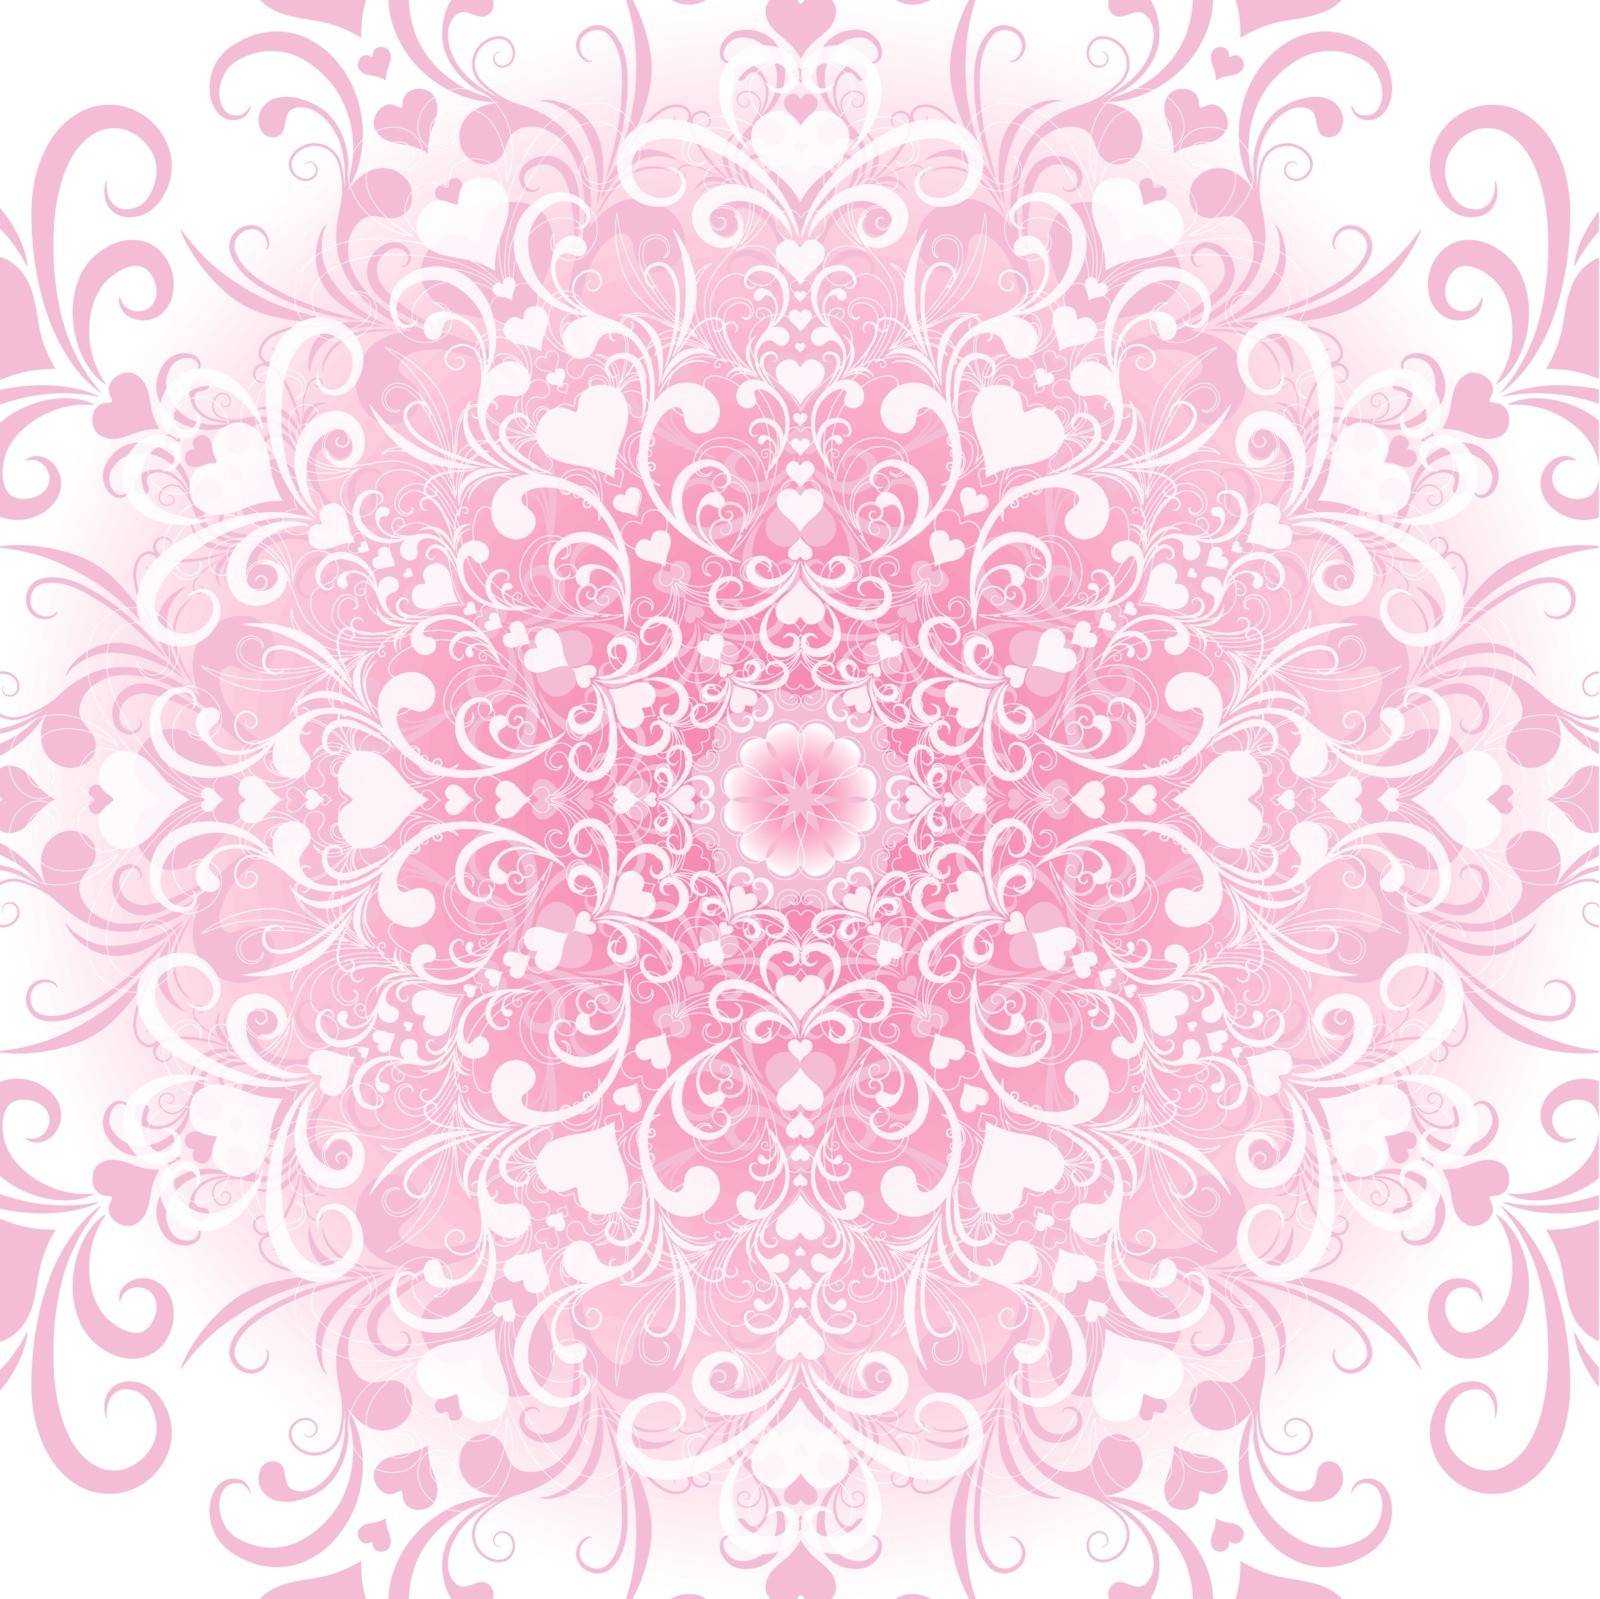 Gentle white-pink filigree valentine floral frame (vector eps 10)